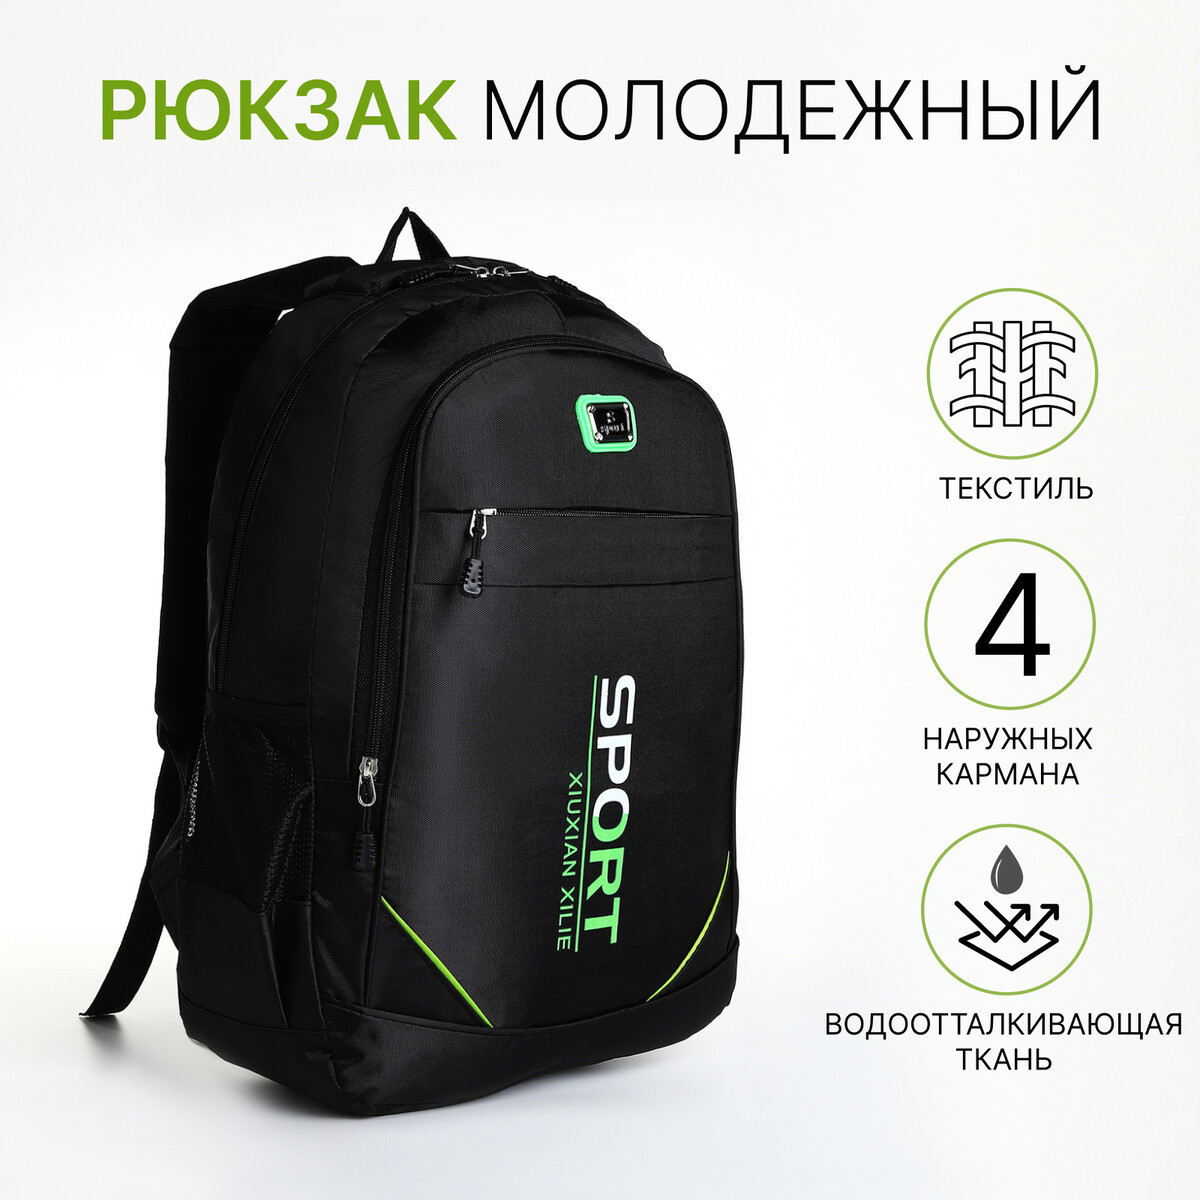 Рюкзак молодежный из текстиля на молнии, 4 кармана, цвет черный/зеленый рюкзак молодежный из текстиля на молнии 4 кармана зеленый